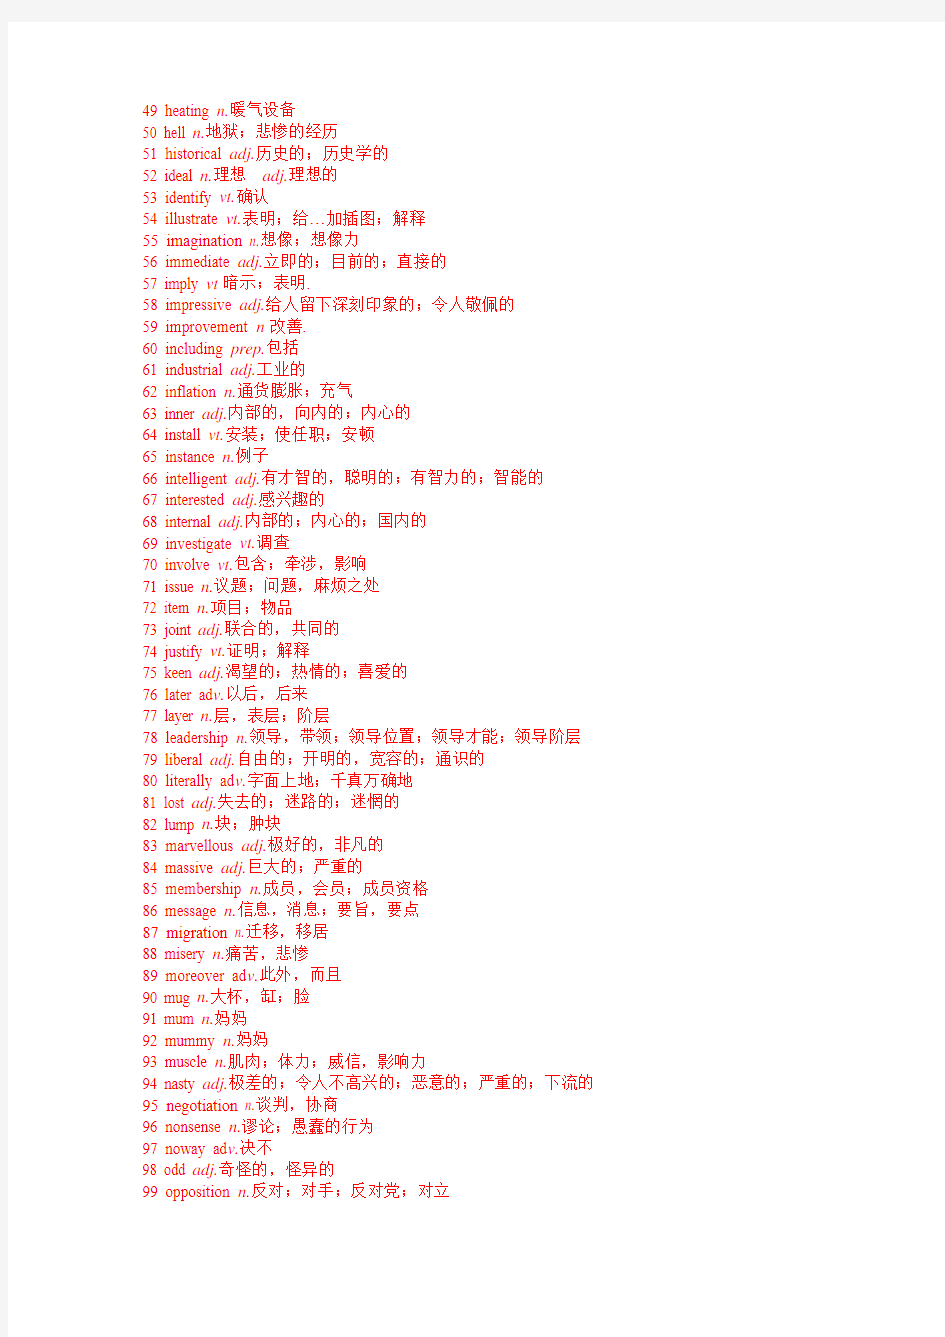 江苏省2010年高考英语新增词汇167个及释义